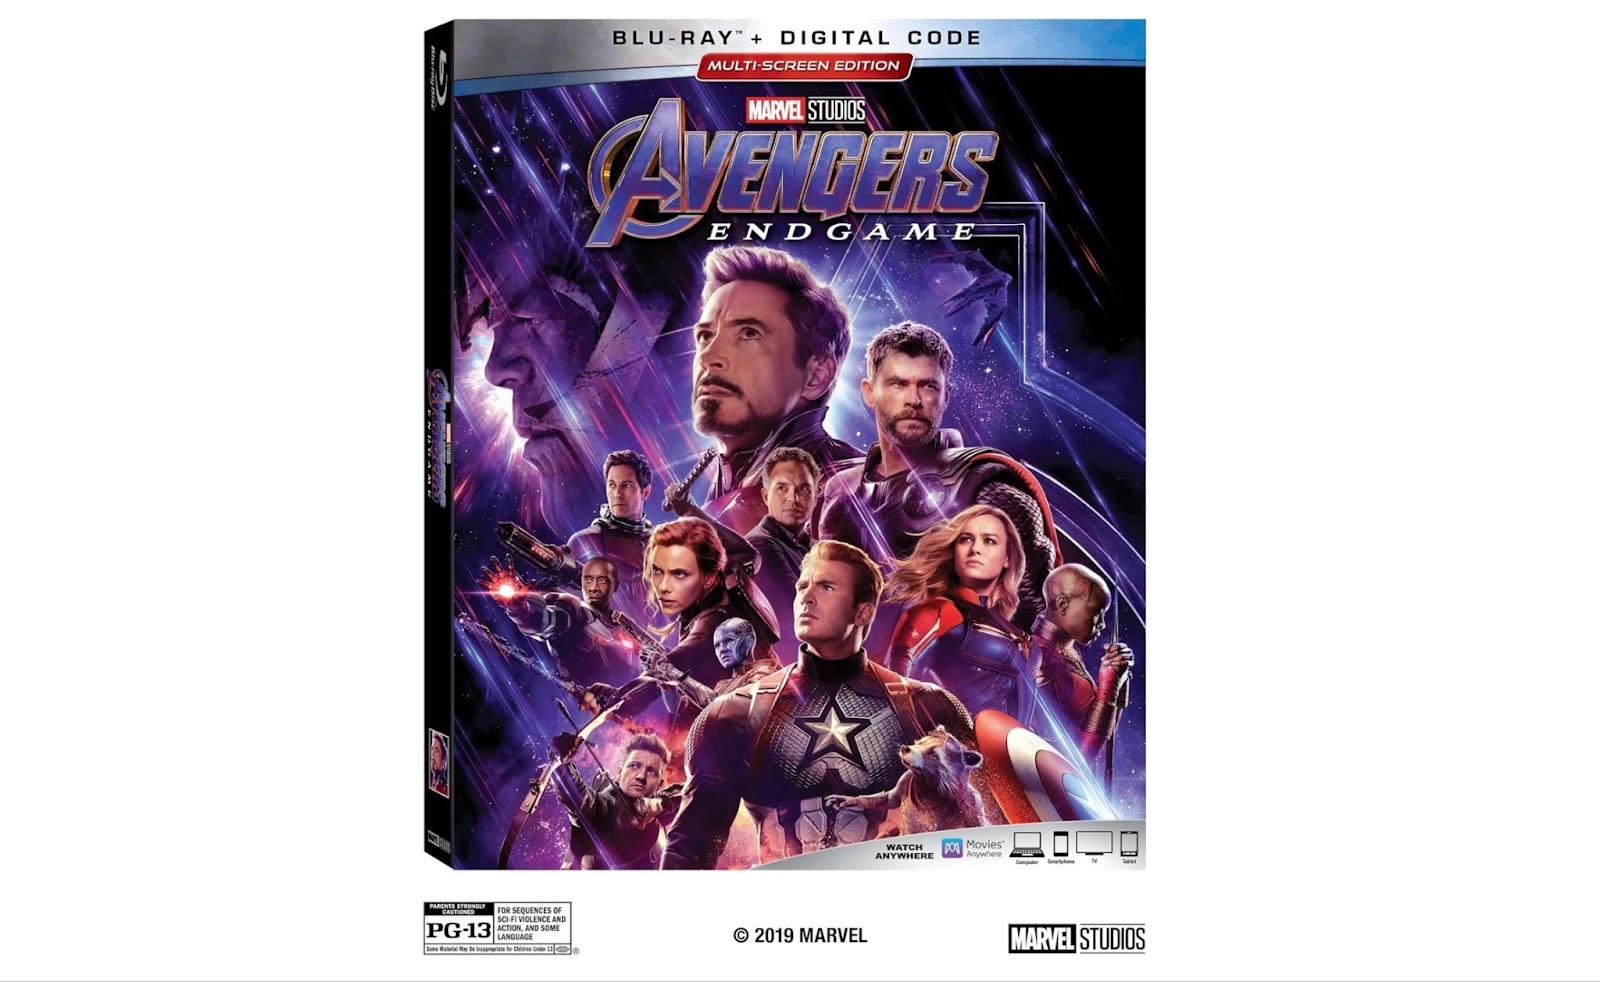 Avengers Endgame Blu-ray/DVD Release Details